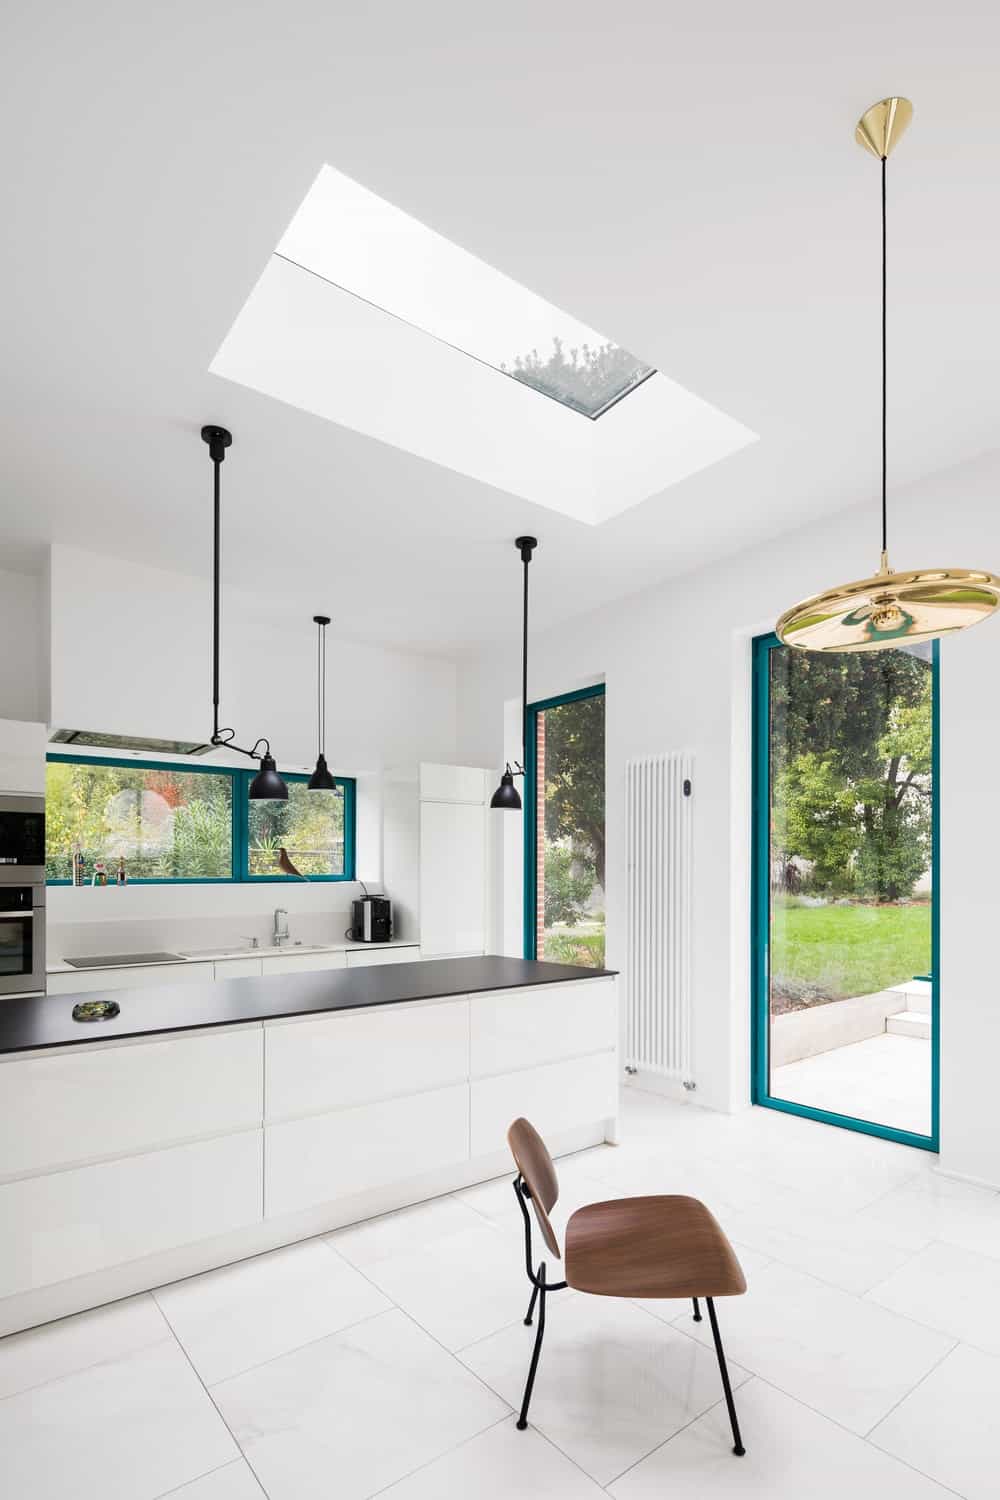 这是一个简单而辉煌的现代厨房，有狭长的设计。它有一个长长的白色厨房岛台，与带天窗的明亮天花板的黑色哑光台面形成对比。